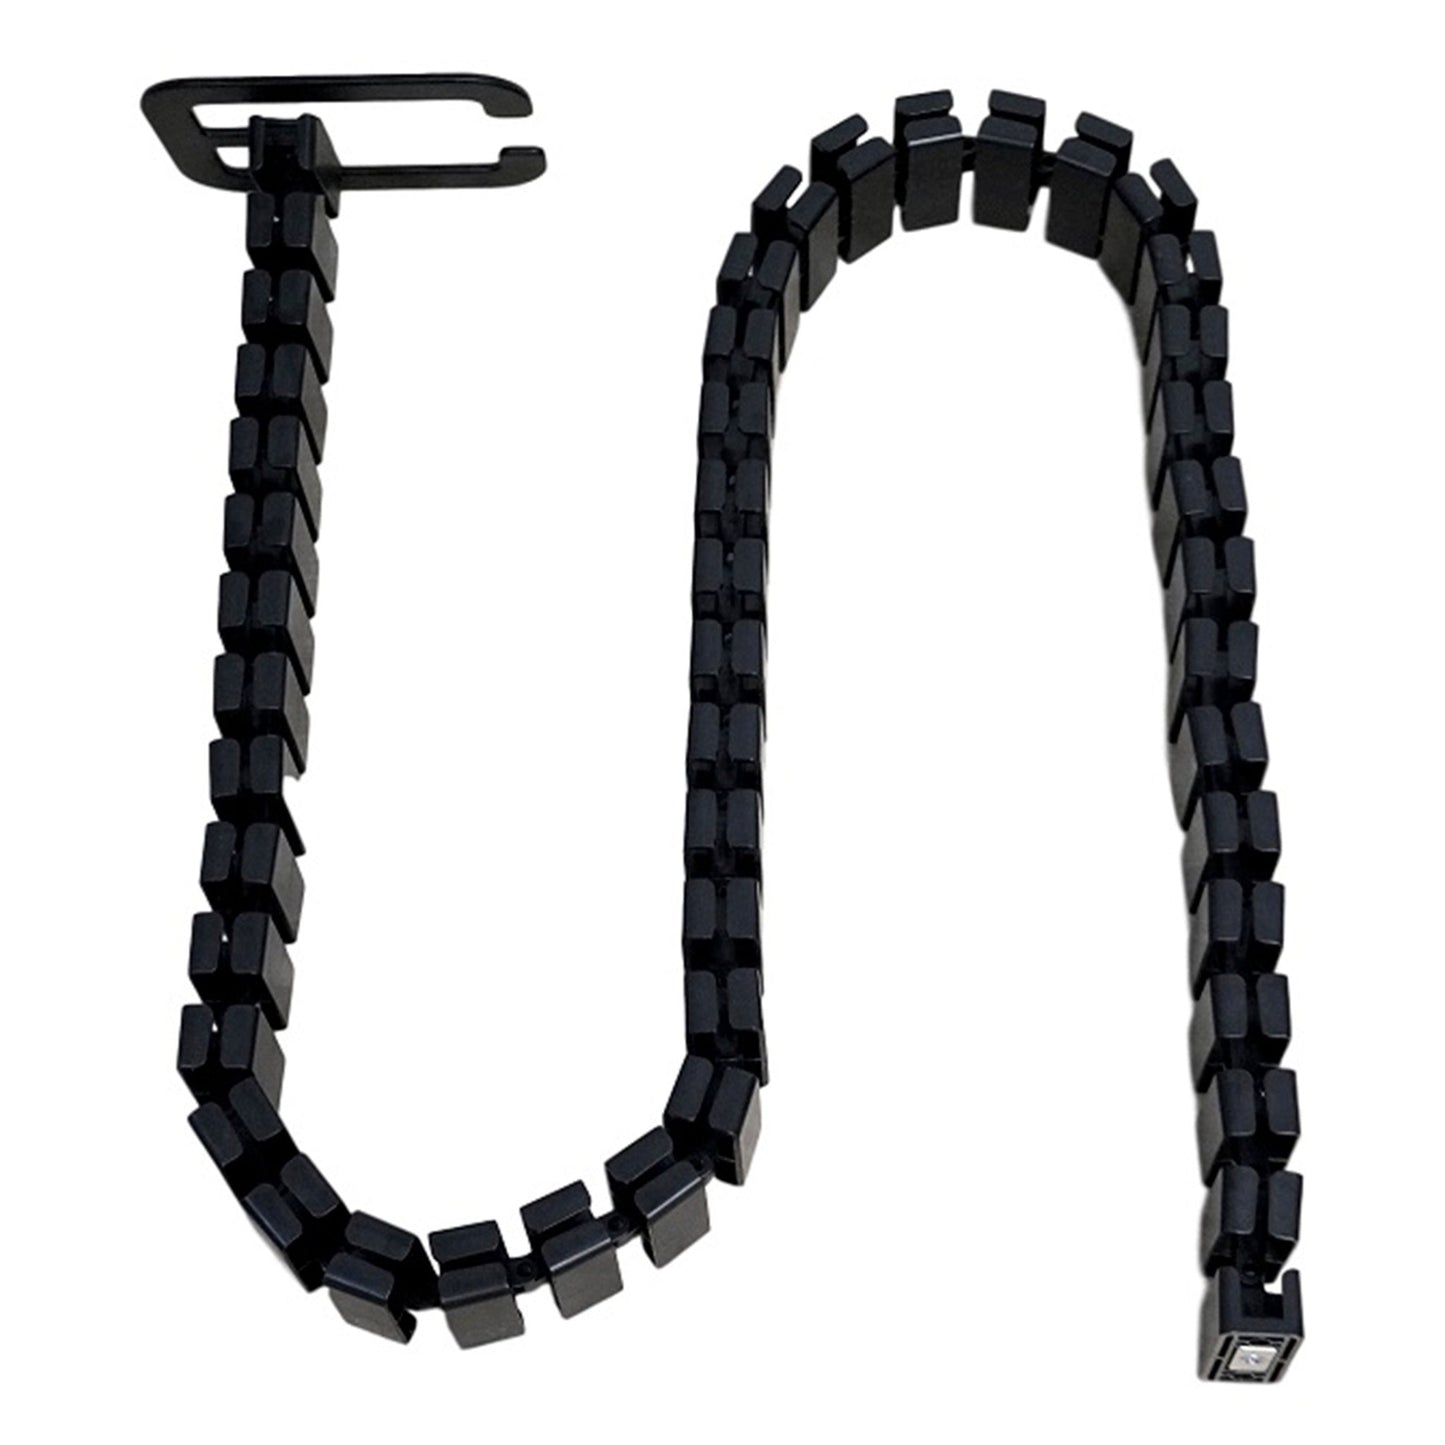 Magnetic Adjustable Cable Management Snake DO-02 Black